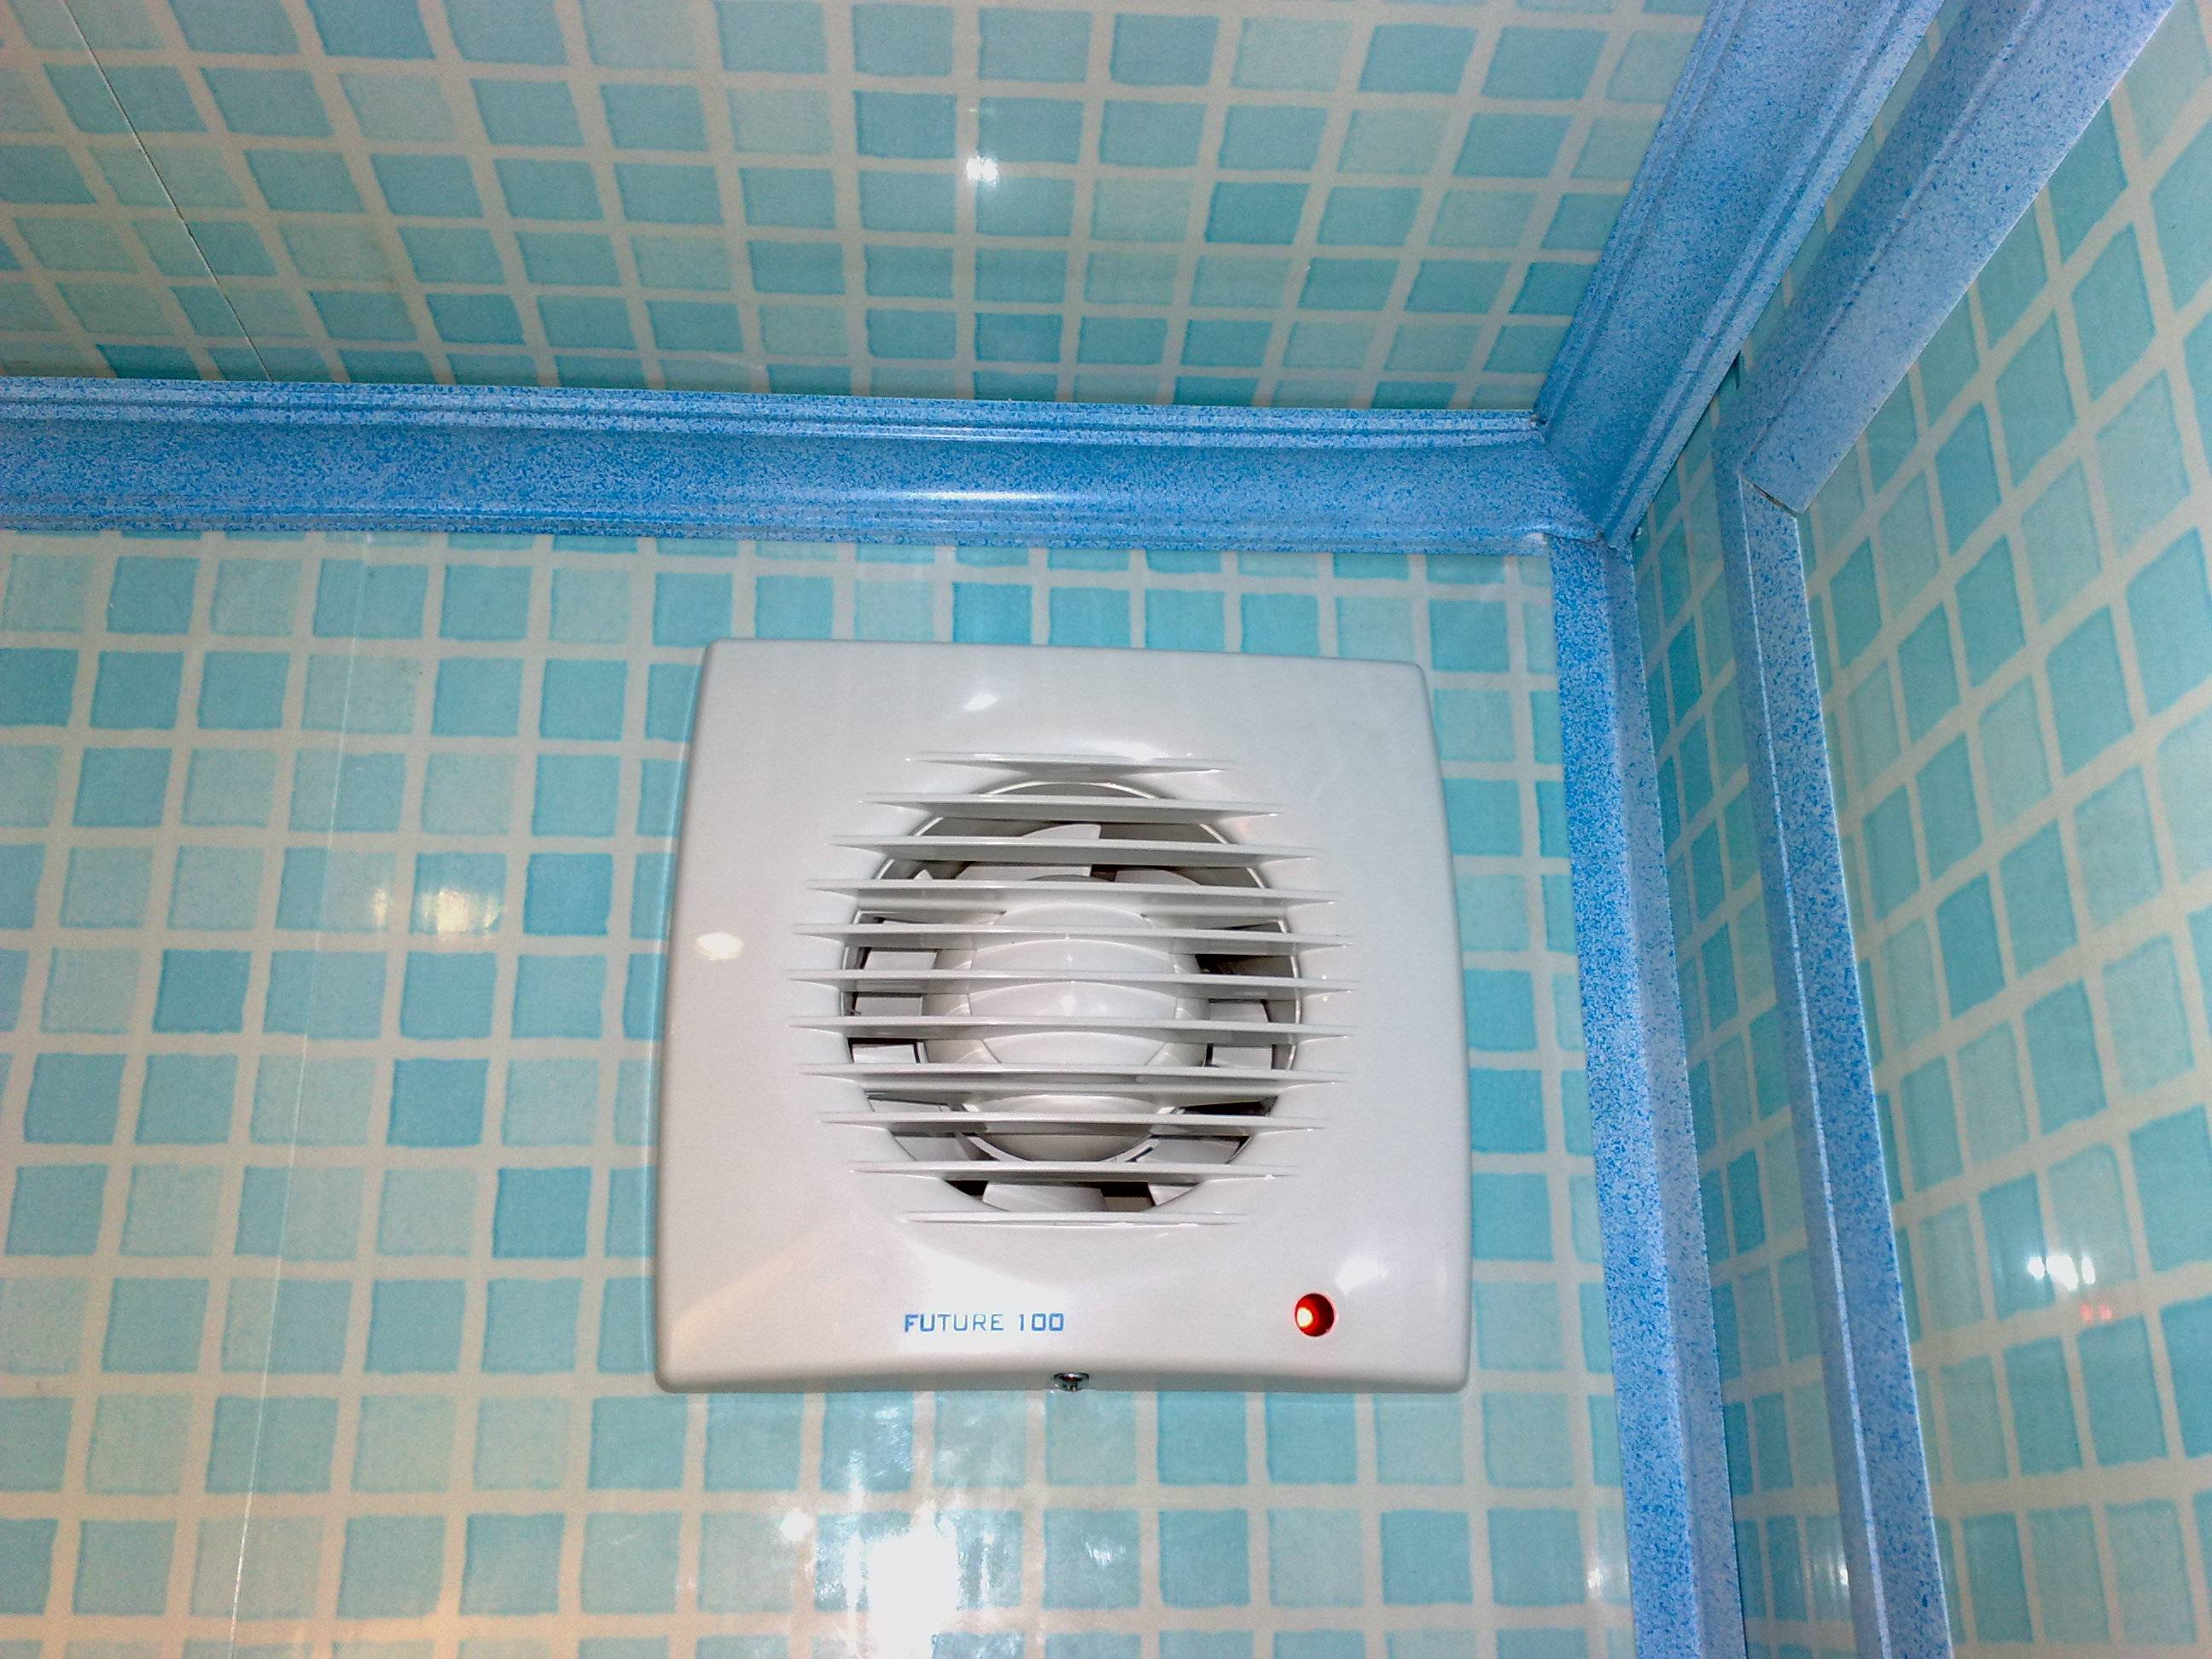 Вытяжной вентилятор в ванную комнату или туалет: особенности, применение, типы, монтаж